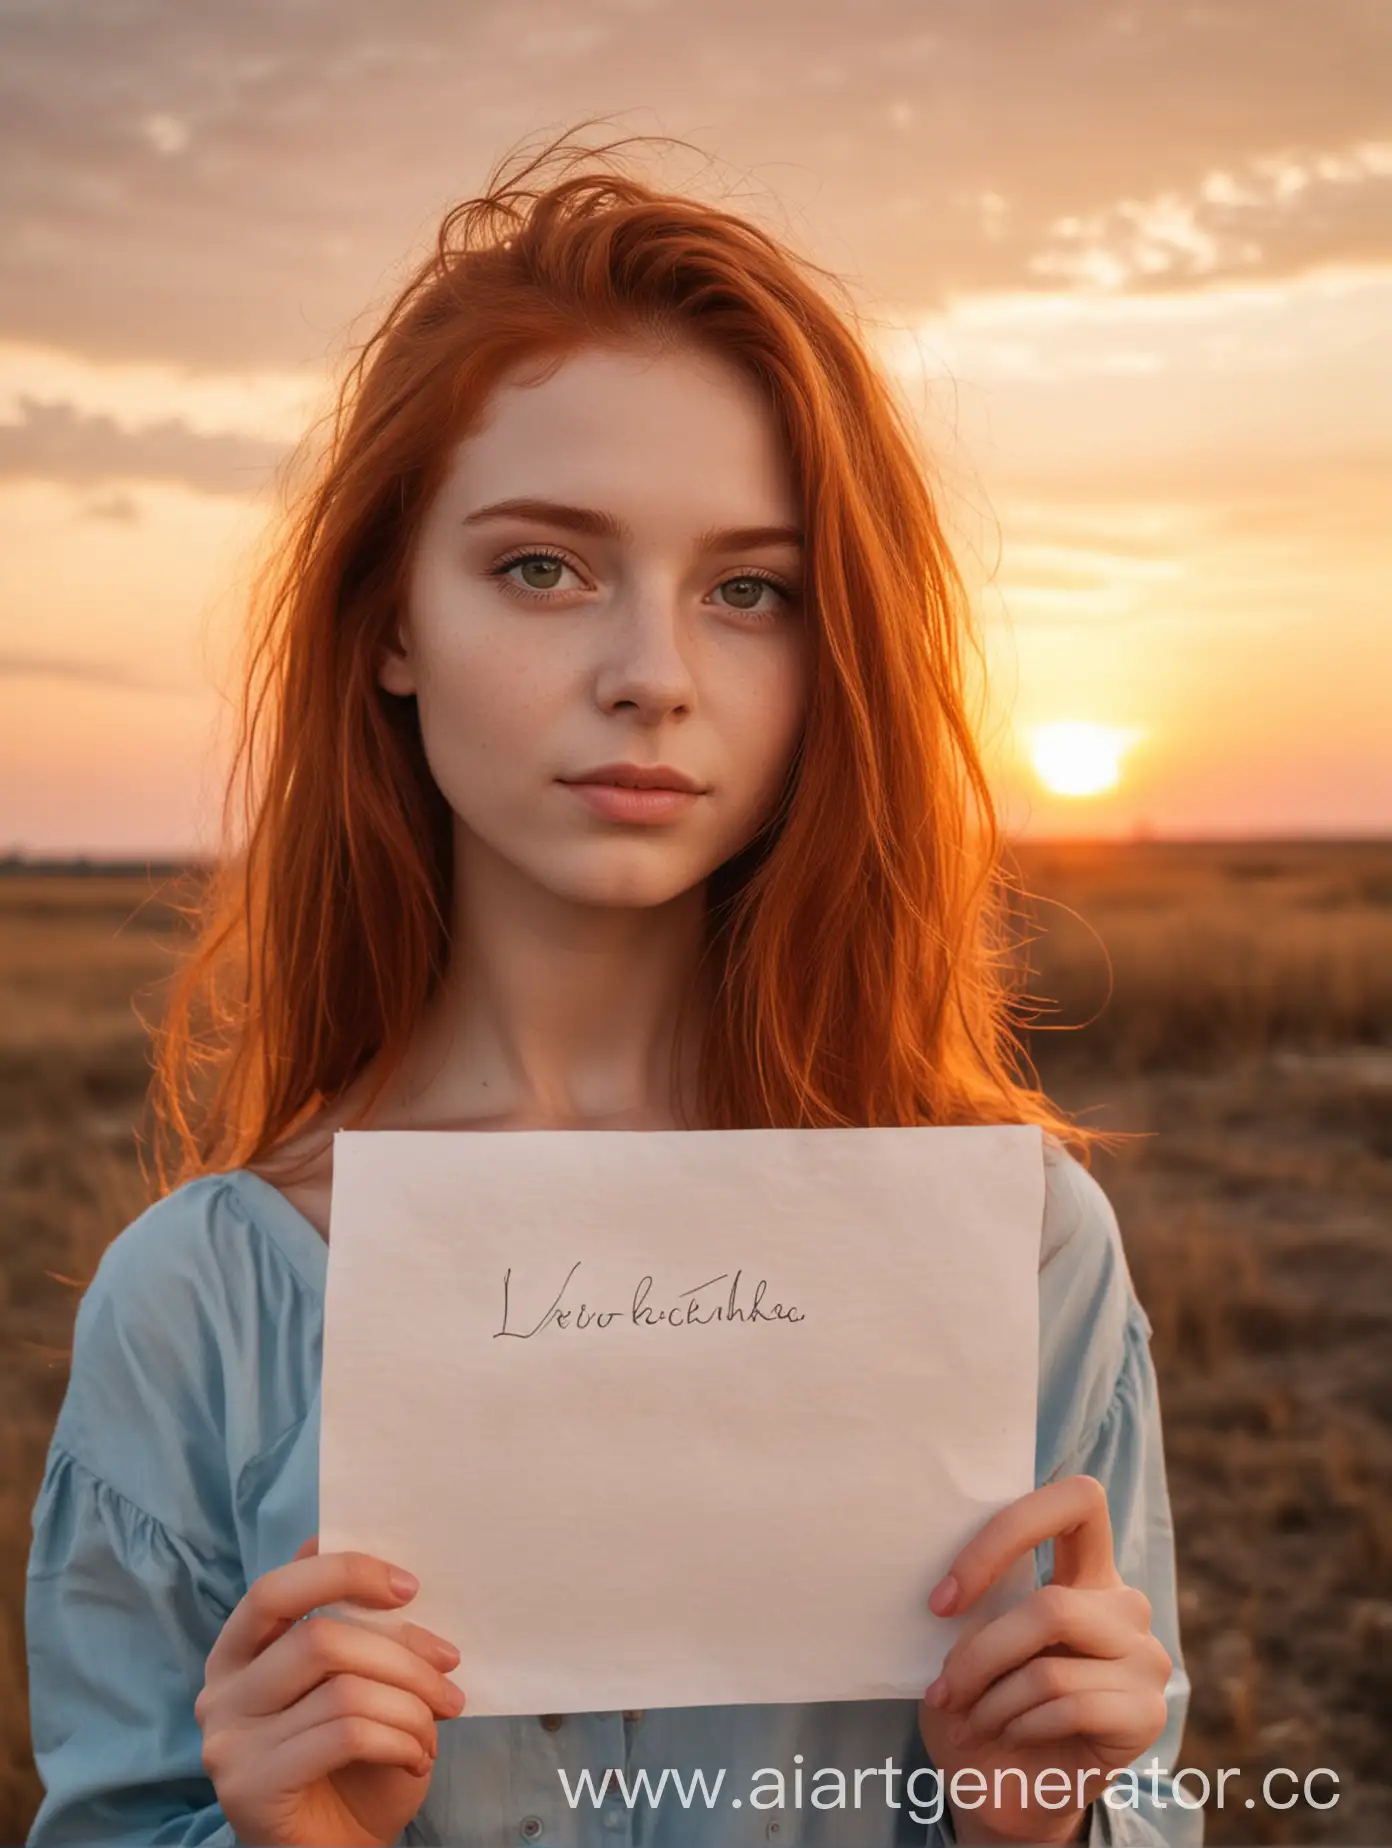 девушка смотрит прямо она рыжая на фоне заката держит листочек бумаги на котором написано Lerochka is the best